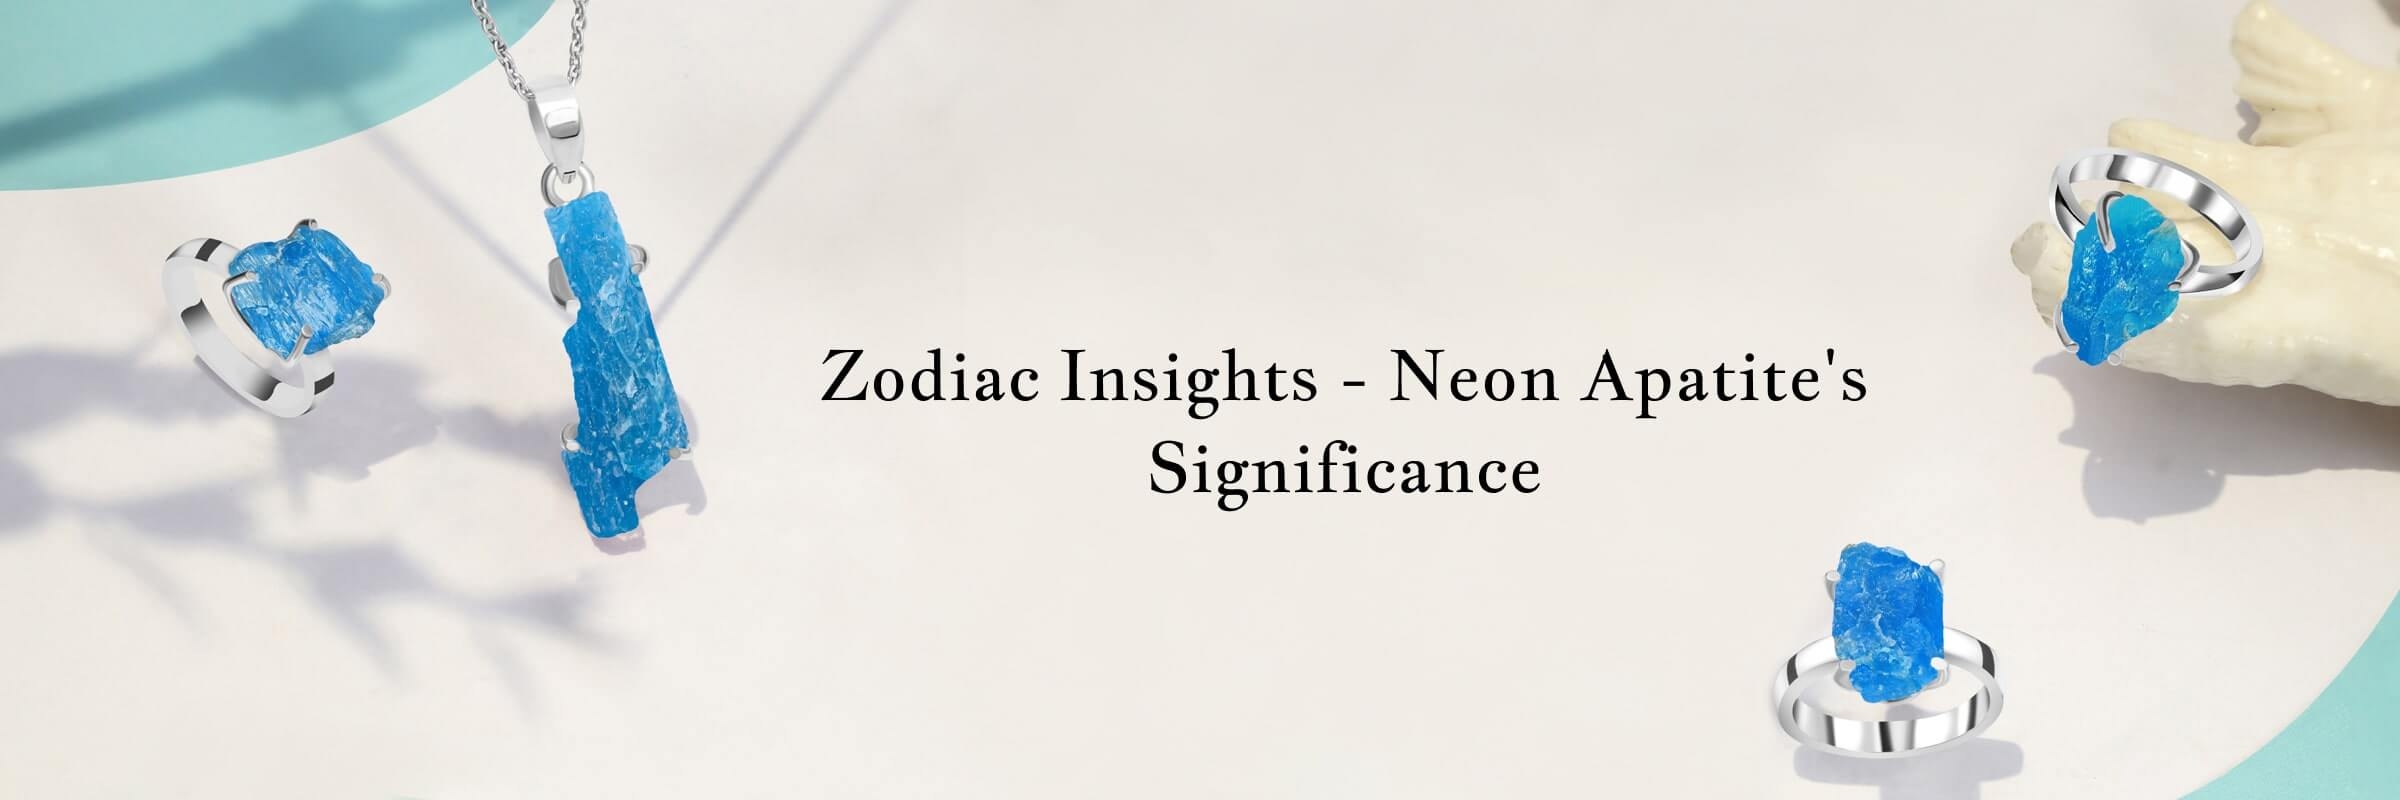 Neon Apatite Zodiac sign